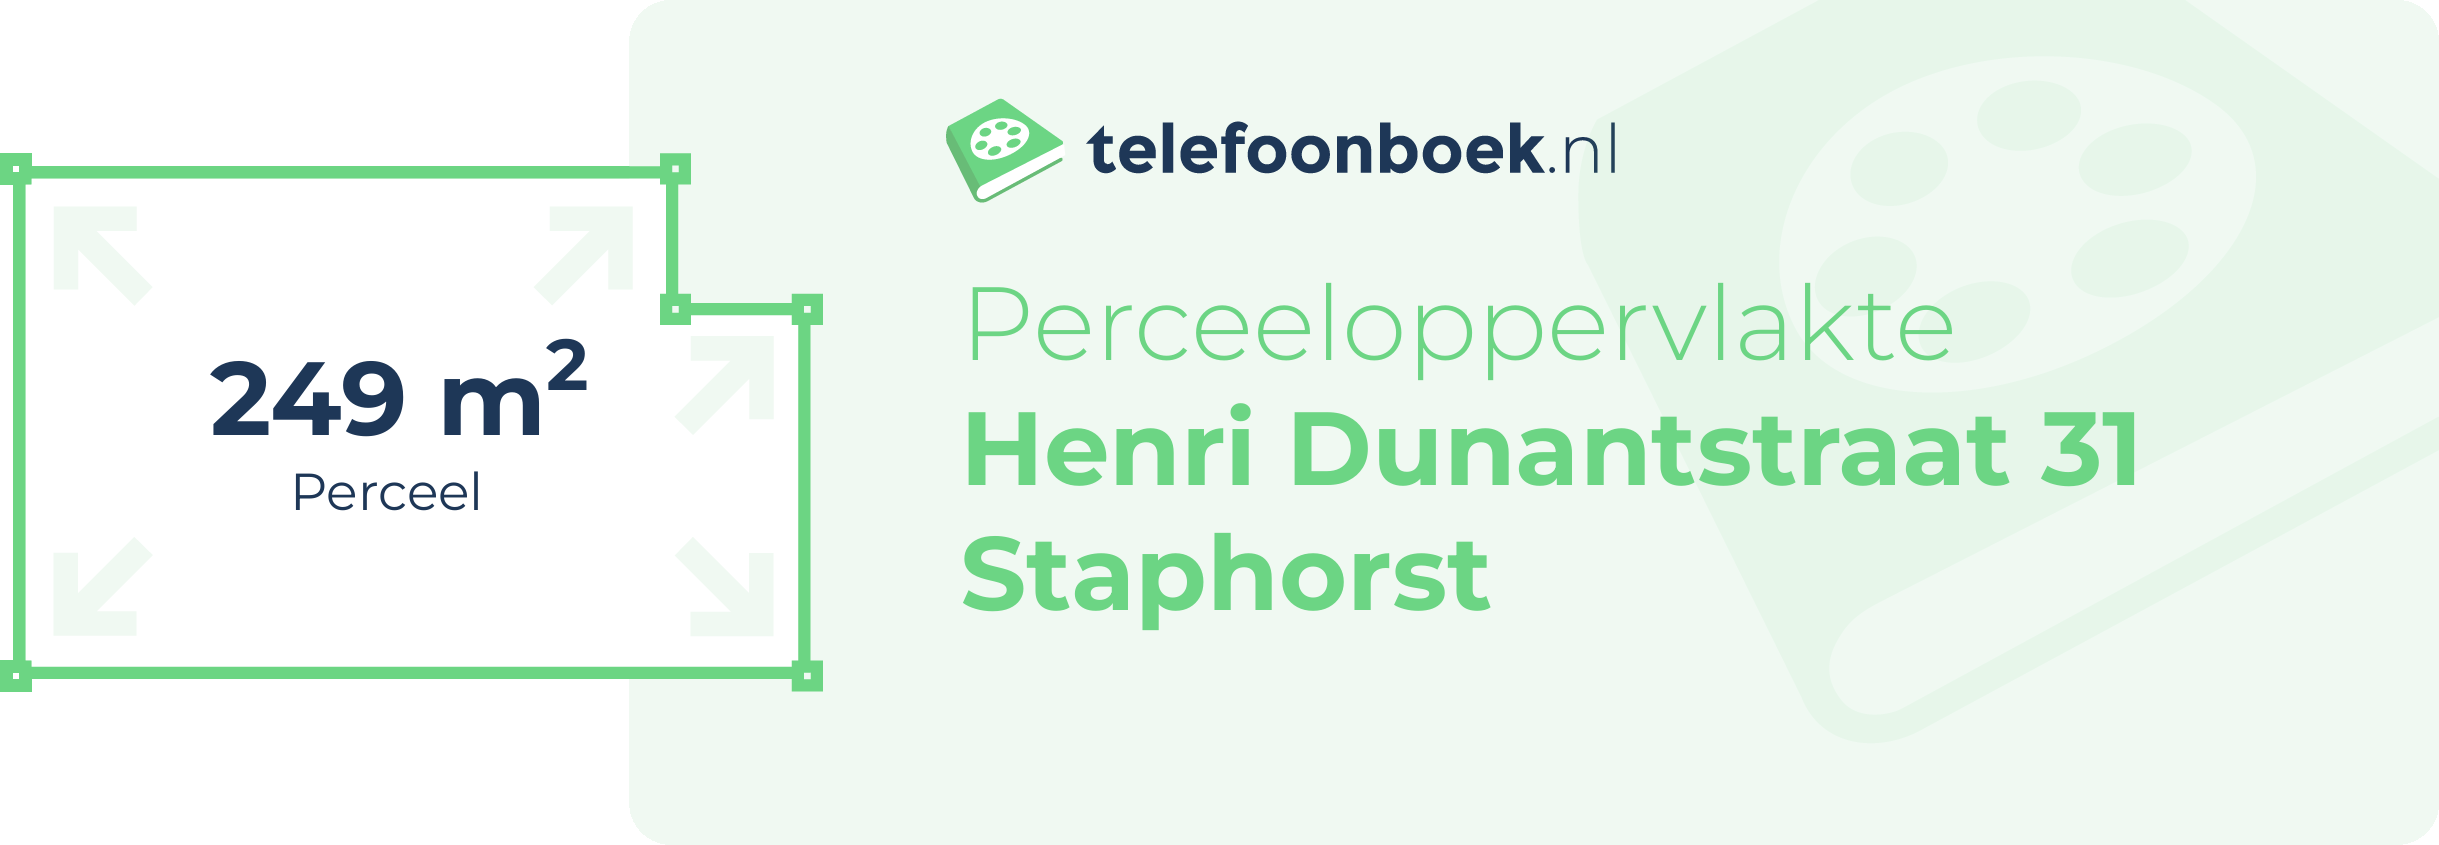 Perceeloppervlakte Henri Dunantstraat 31 Staphorst